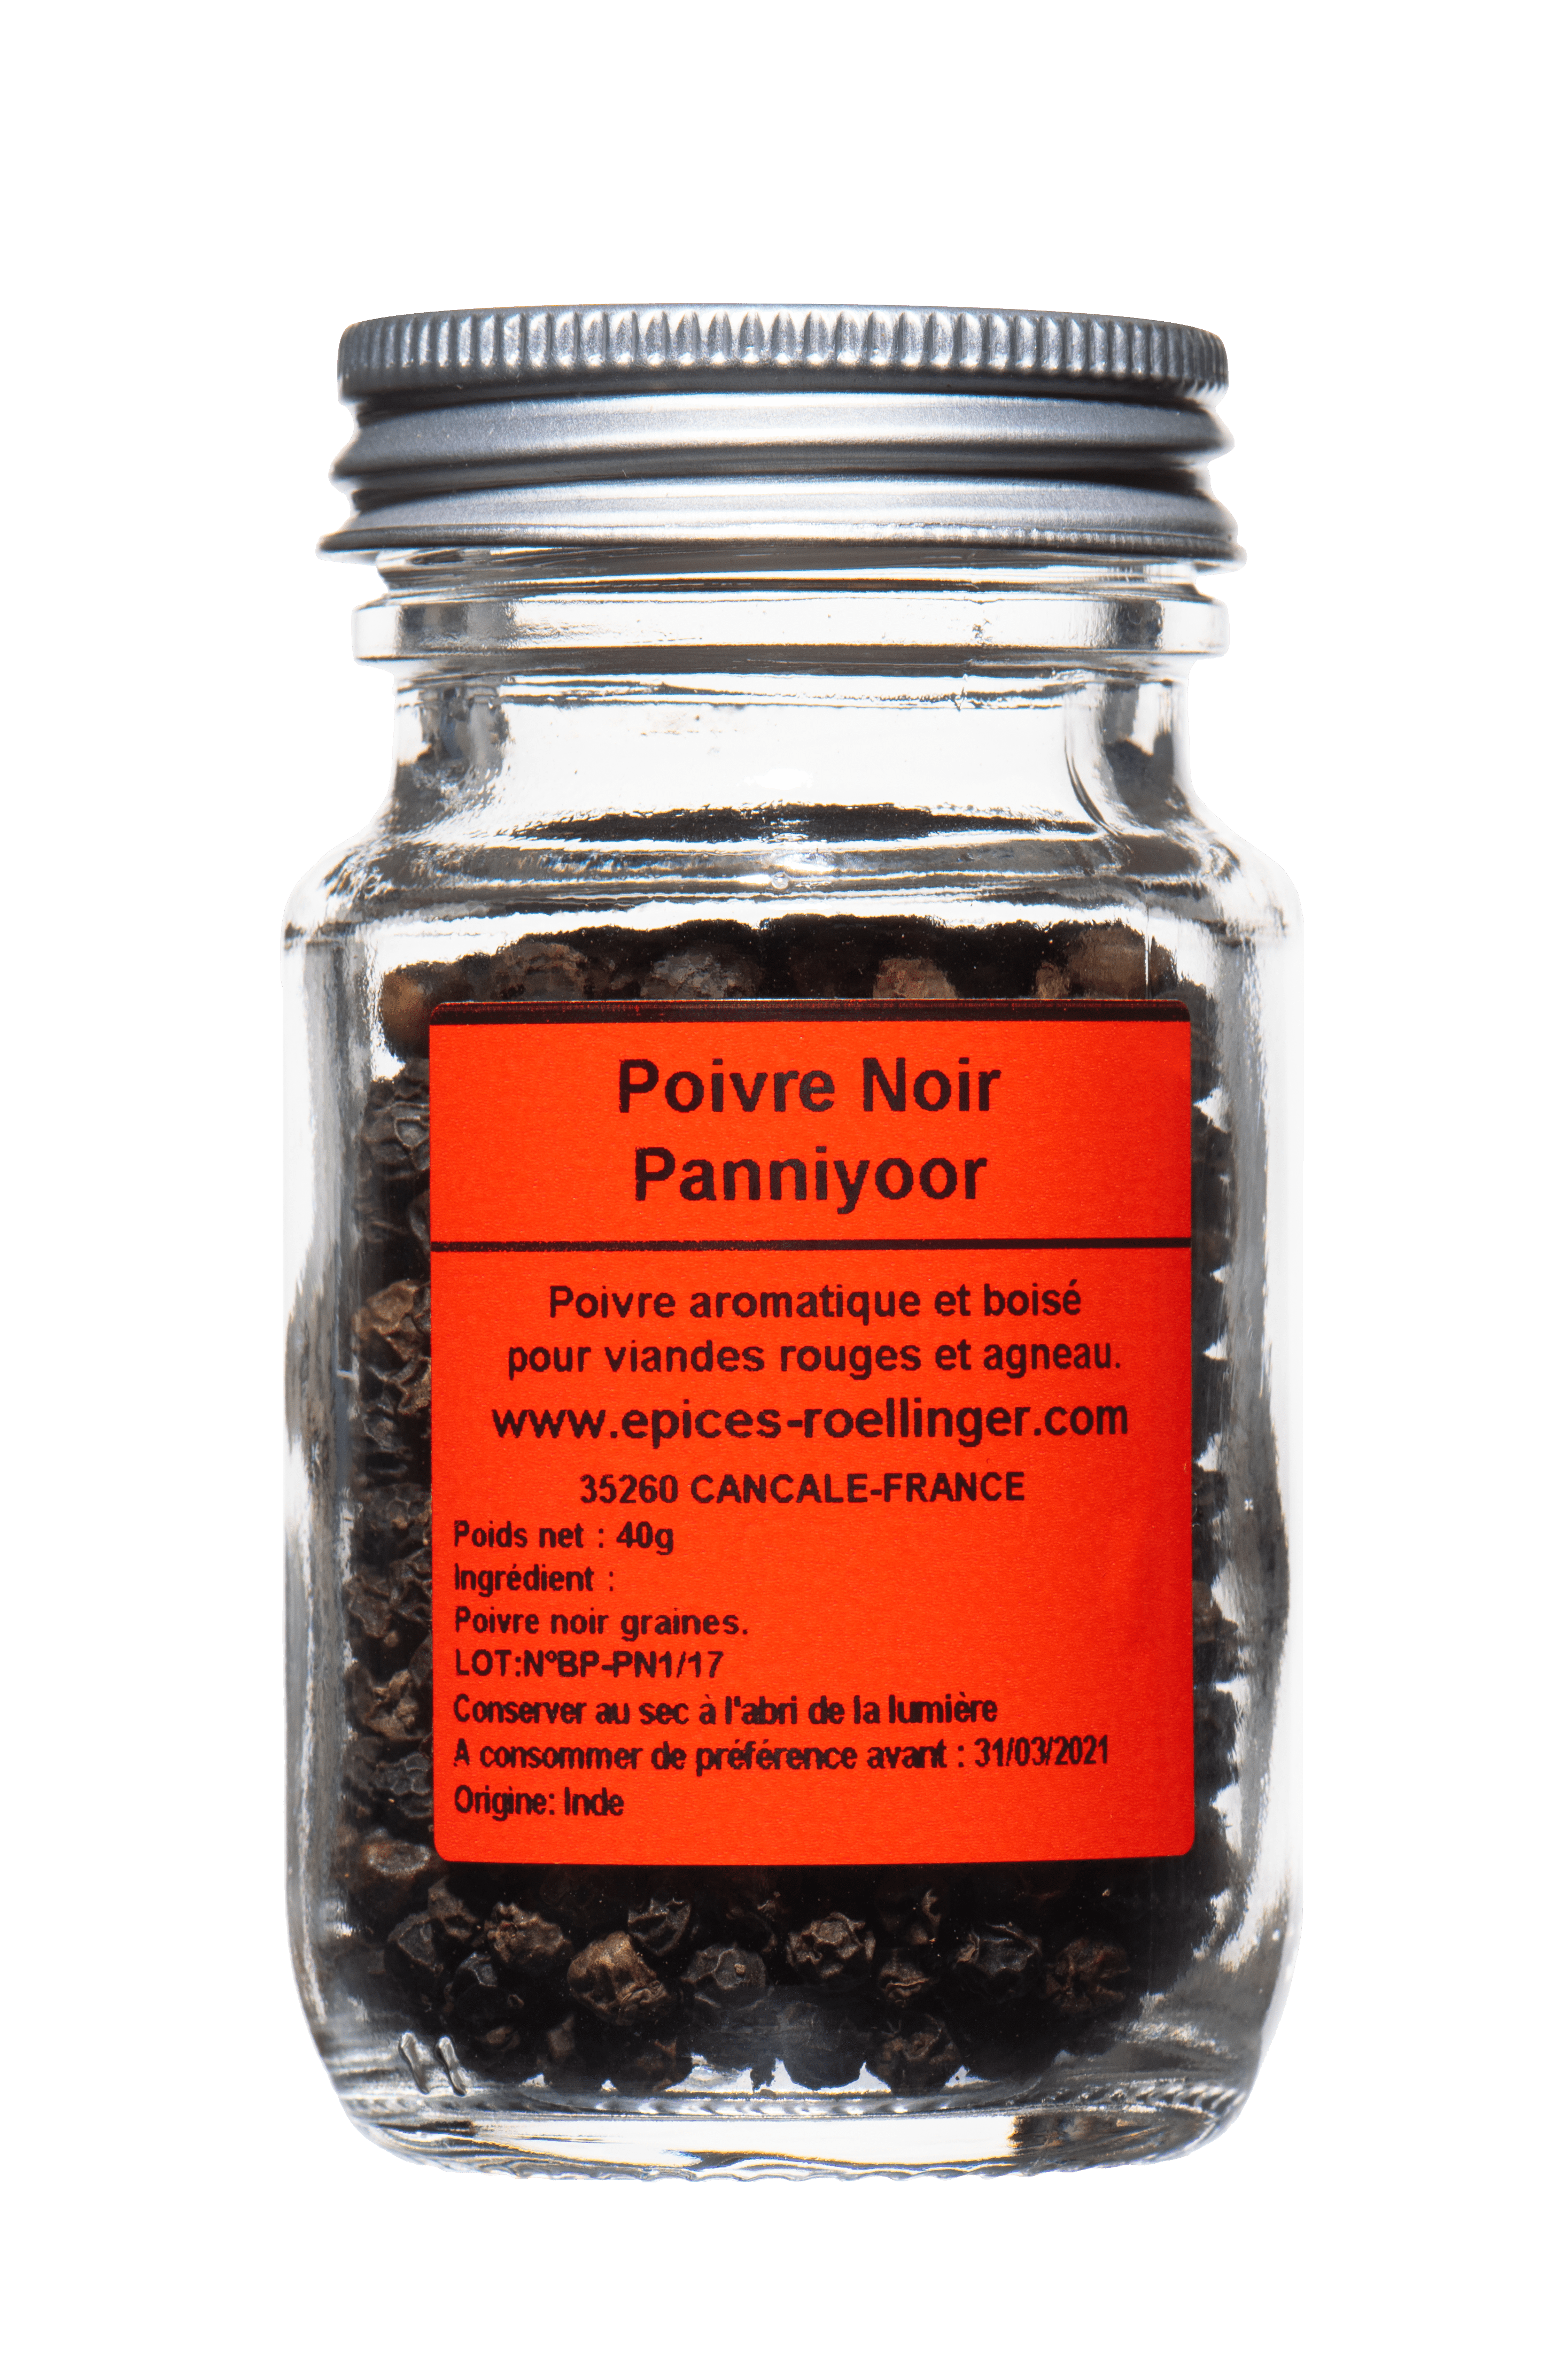 Poivre noir Panniyoor - Poivres pour les viandes